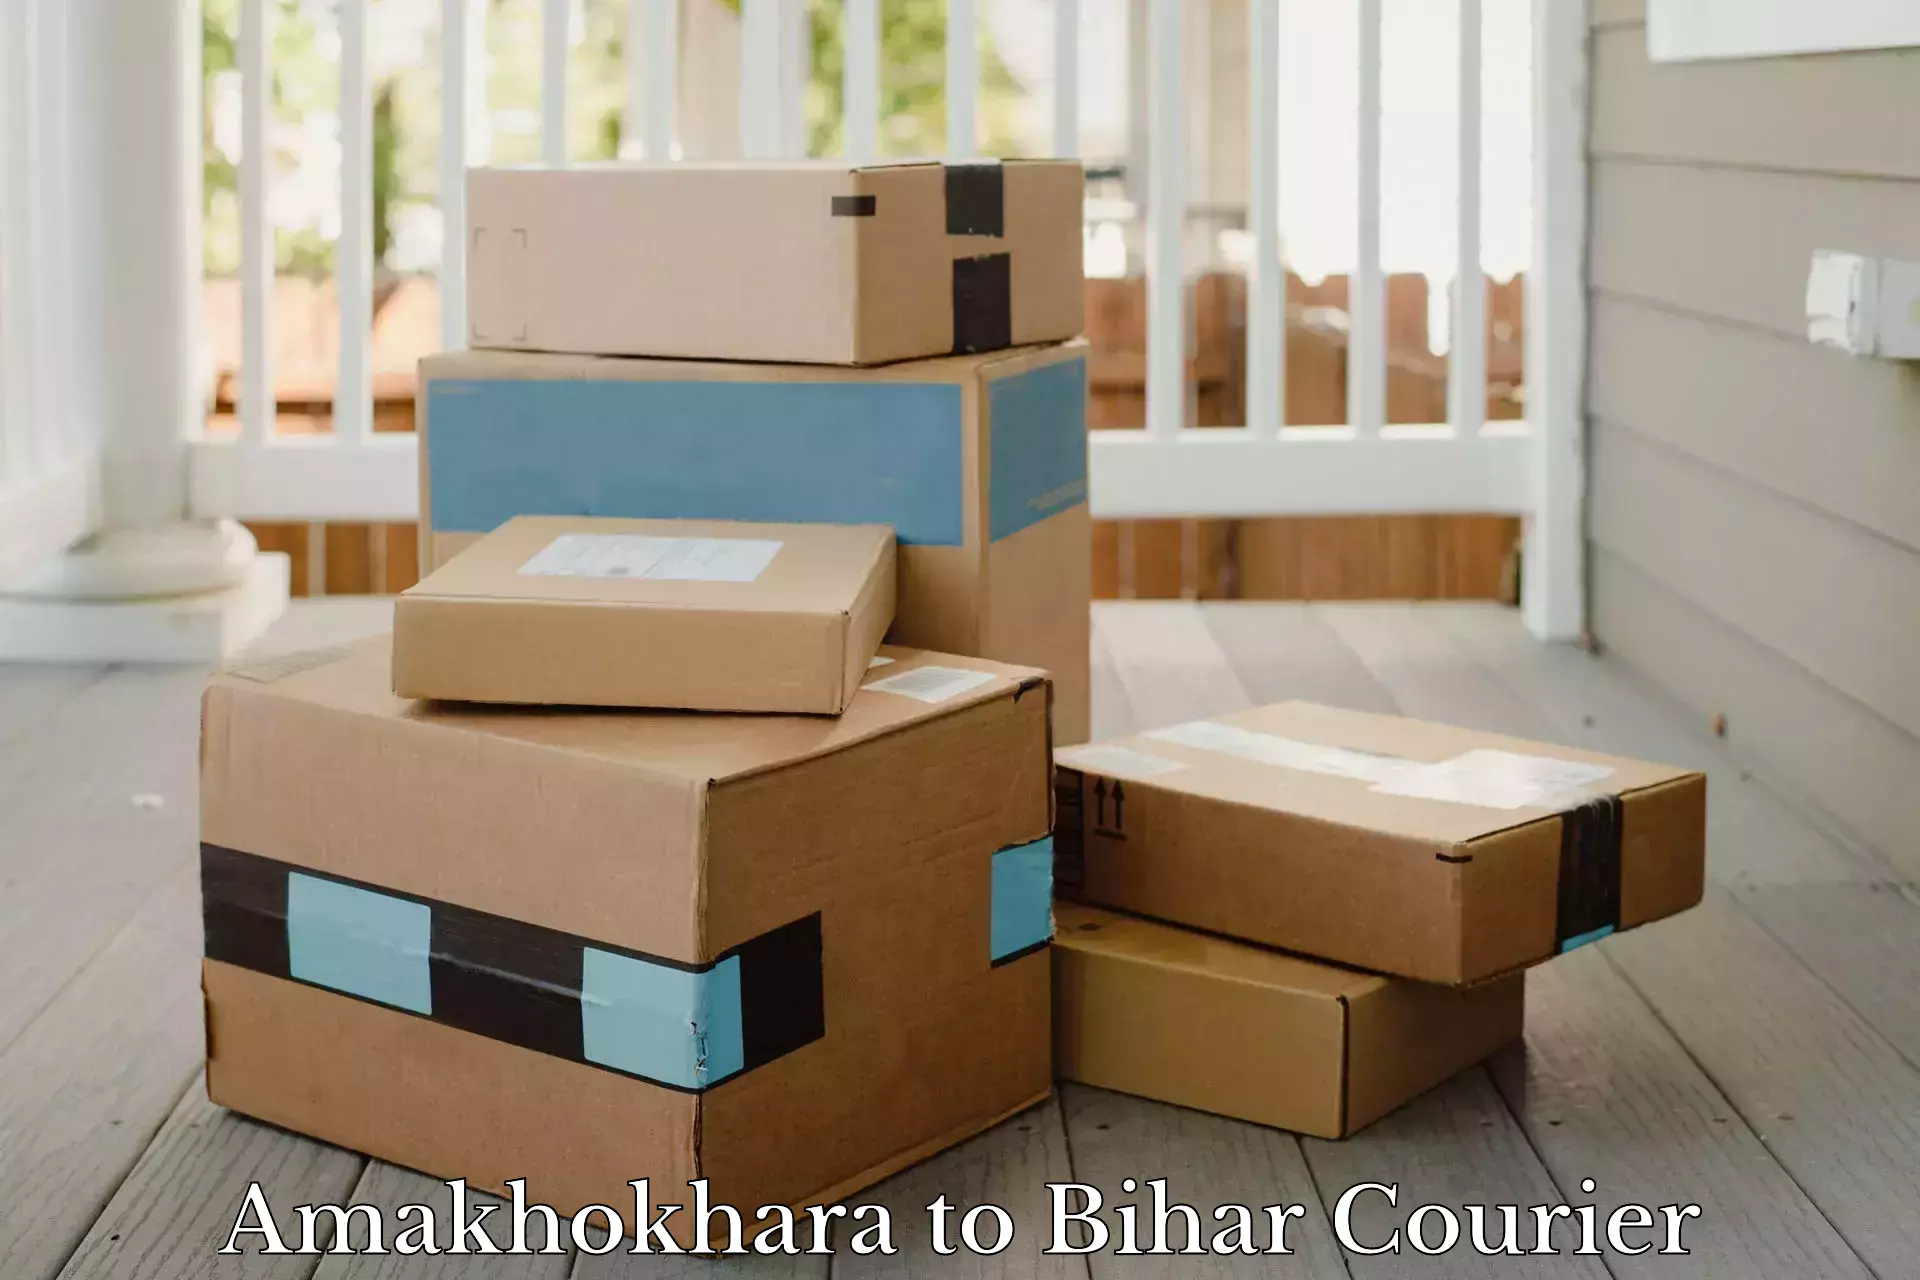 Customer-centric shipping Amakhokhara to Bihar